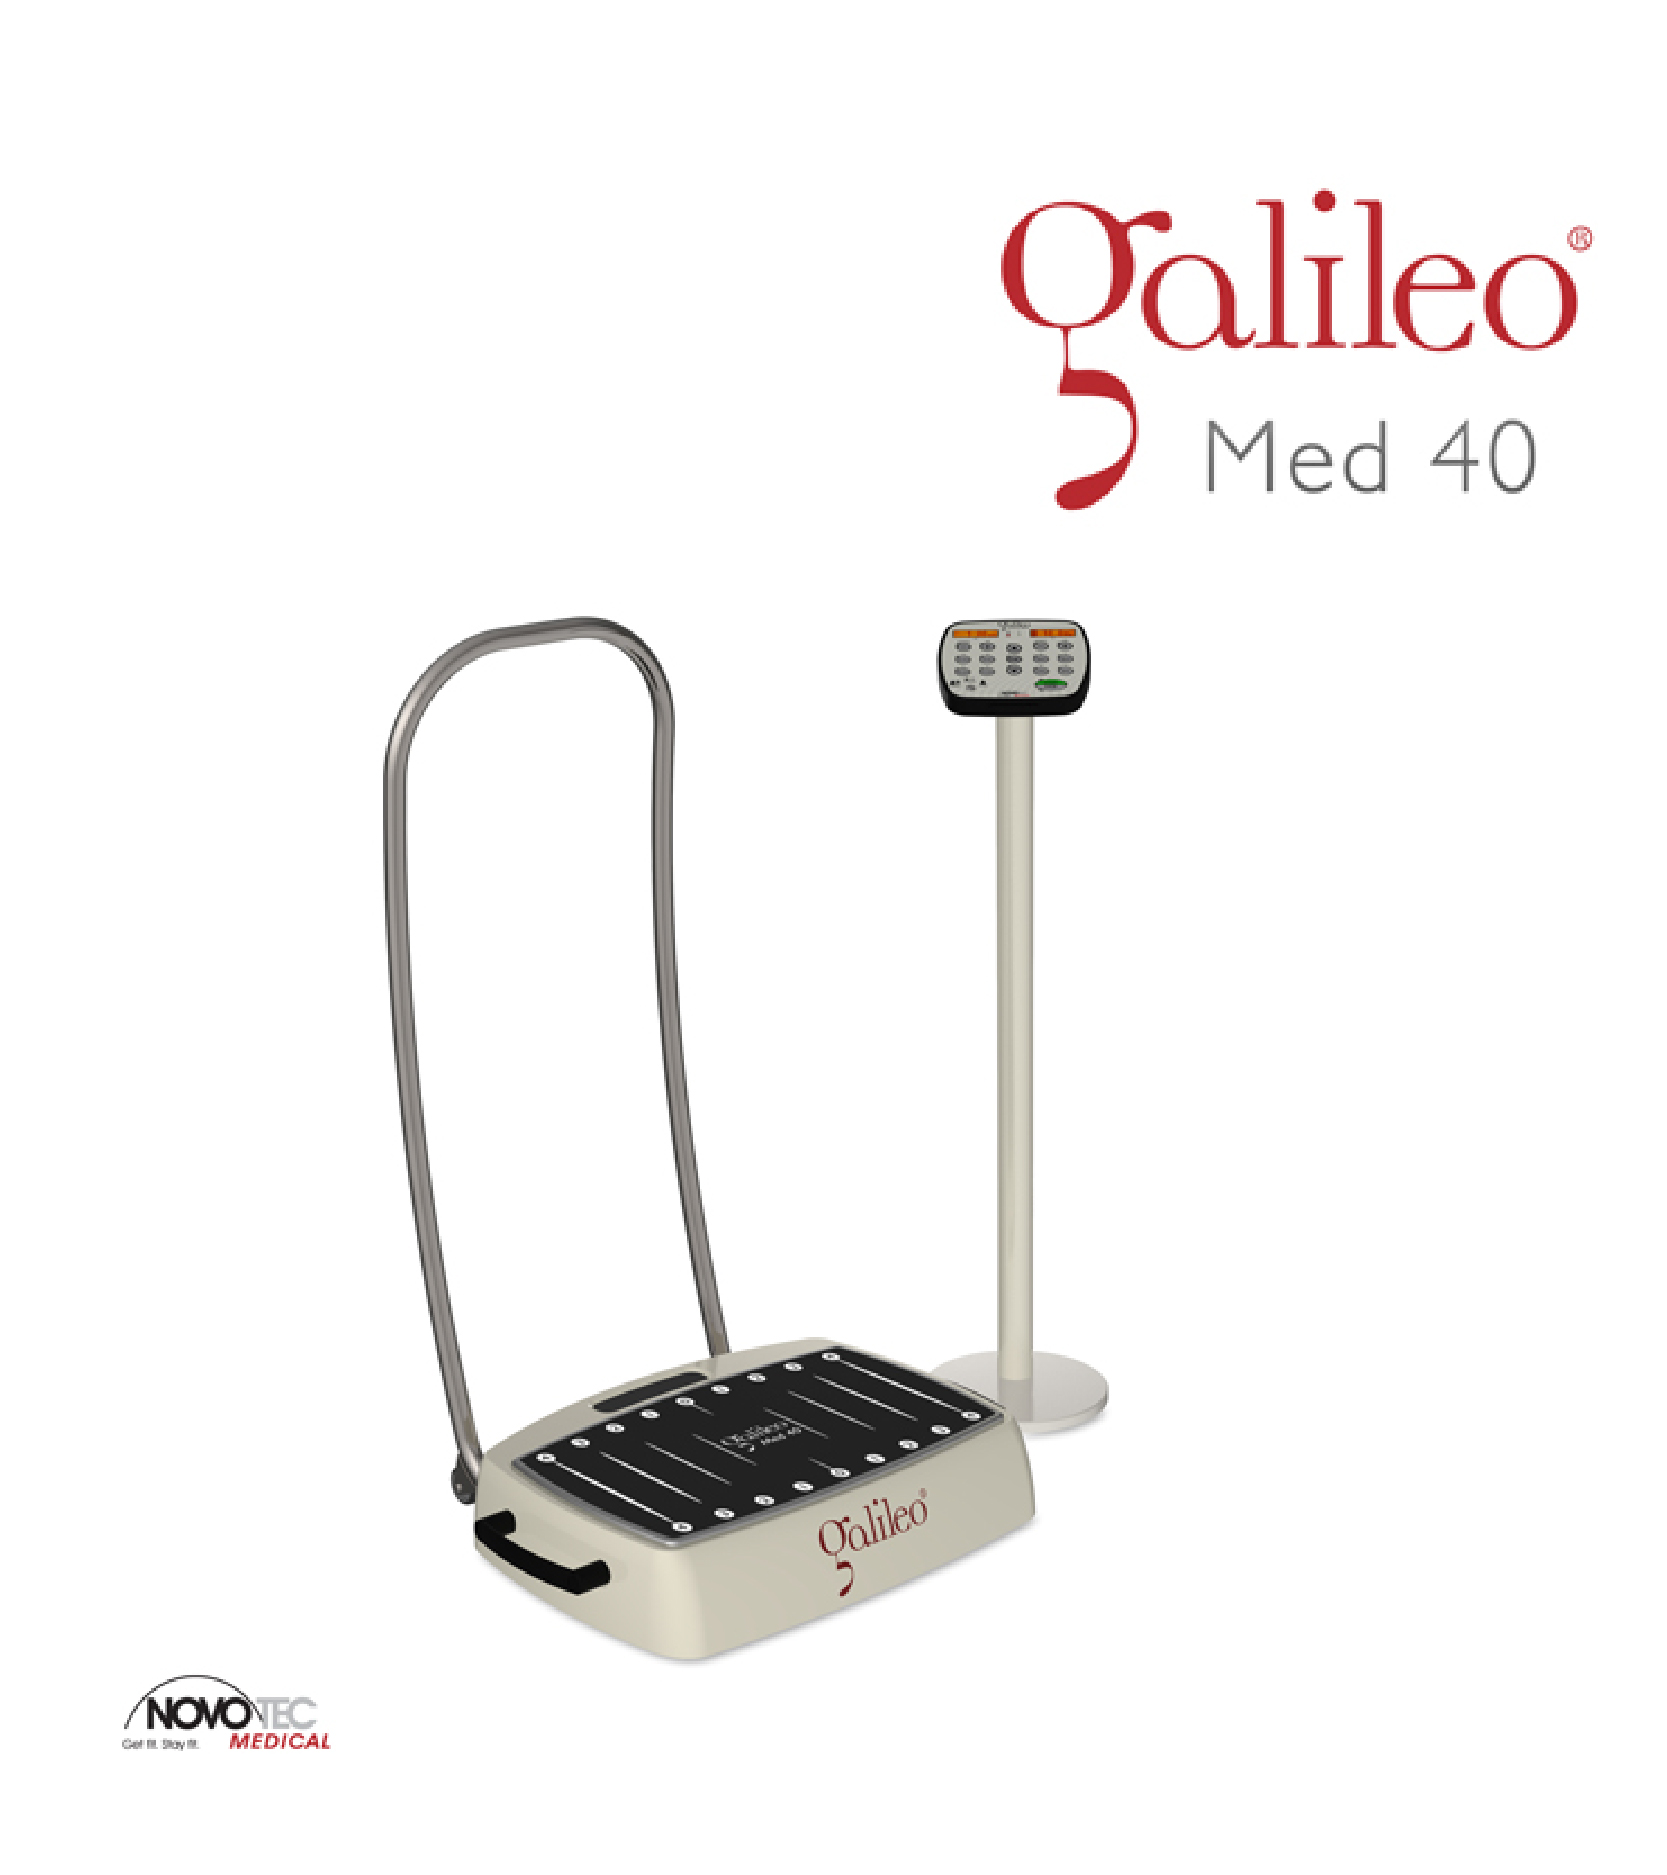 Galileo Med 40